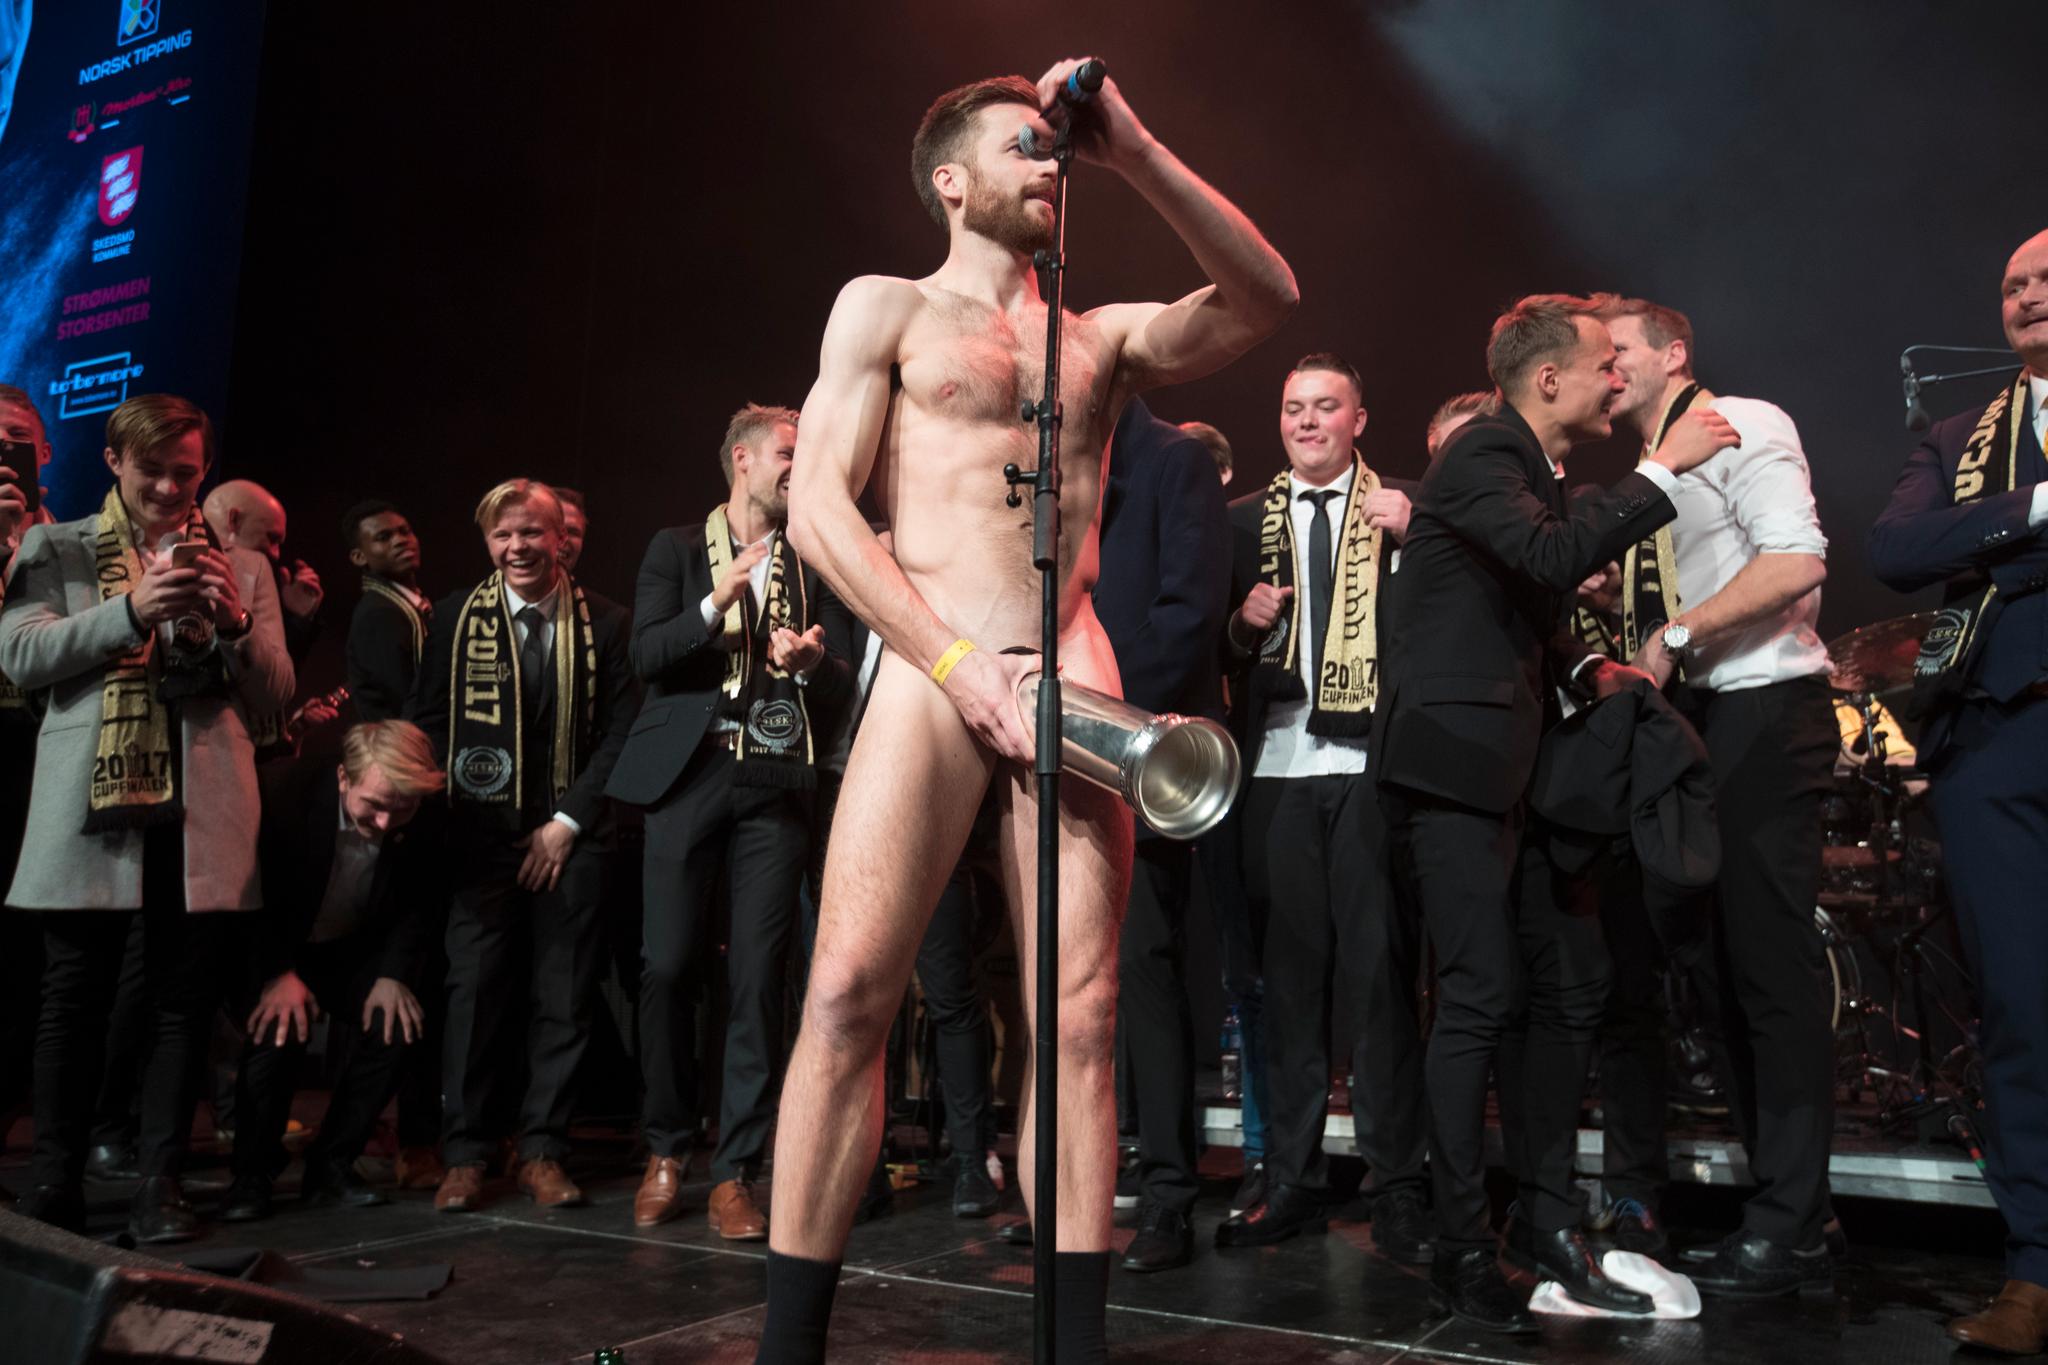 3. desember: Aleksander Melgalvis lager et aldri så lite strippeshow på scenen under feiringen av Lillestrøms cupgull. Spilleren kaster klærne og holder kongepokalen på et strategisk sted.